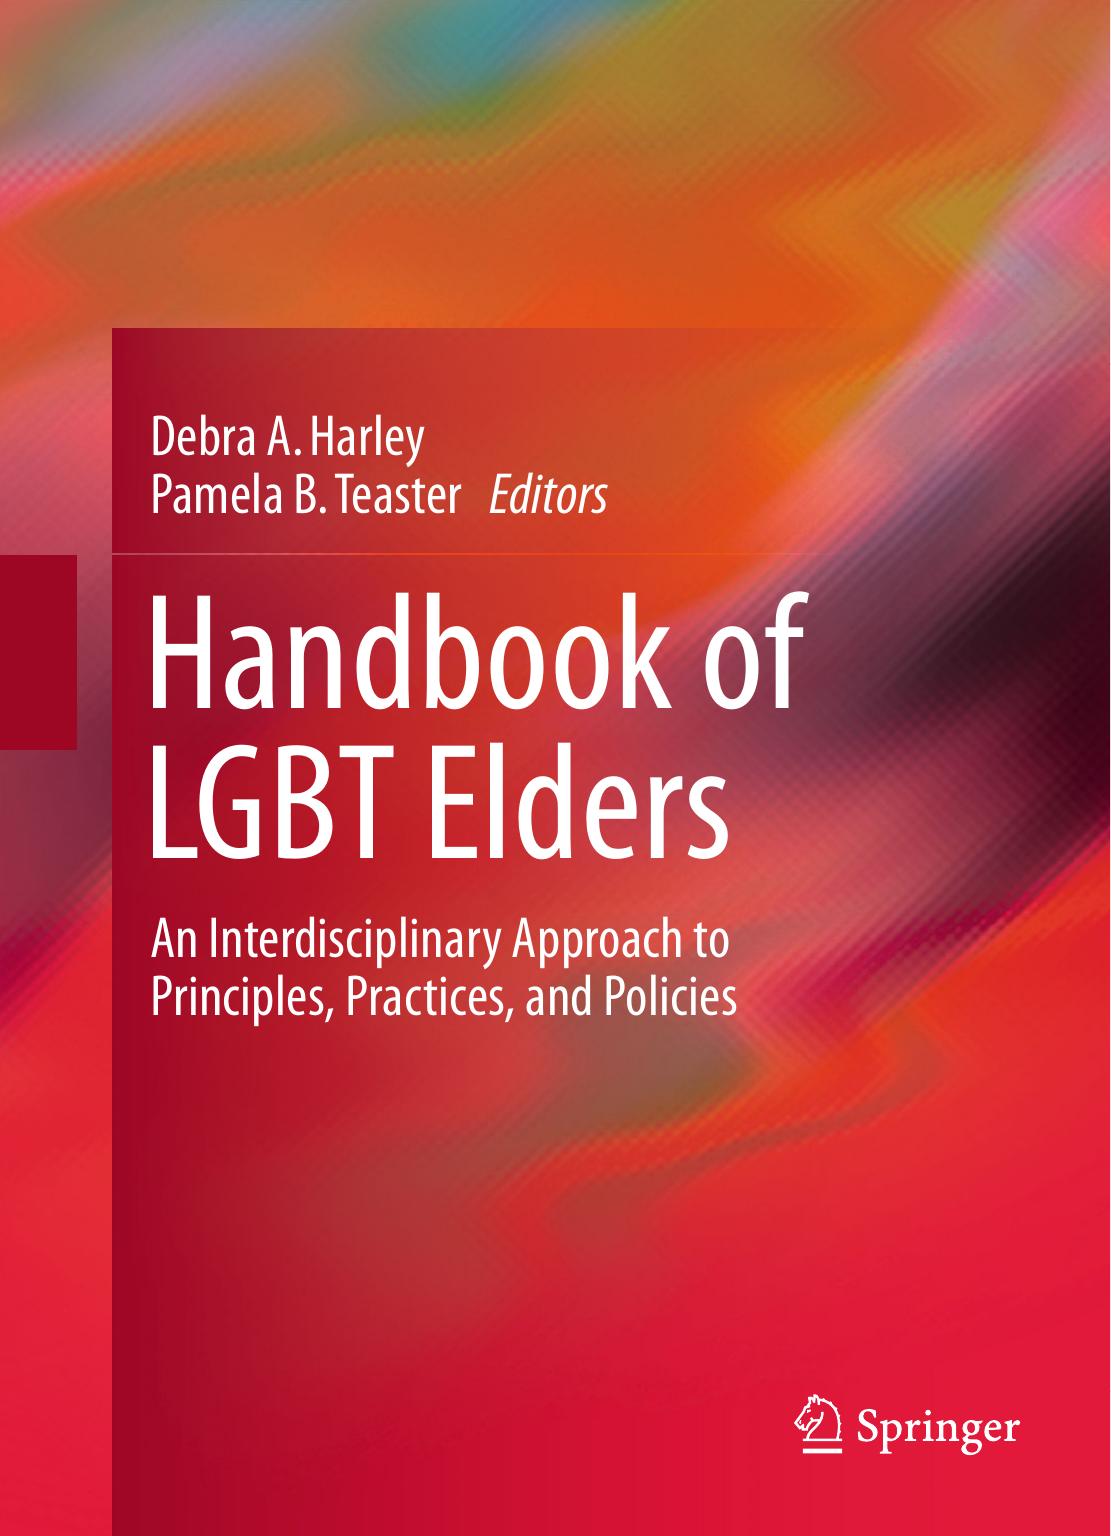 Handbook of LGBT Elders by Debra A. Harley & Pamela B. Teaster